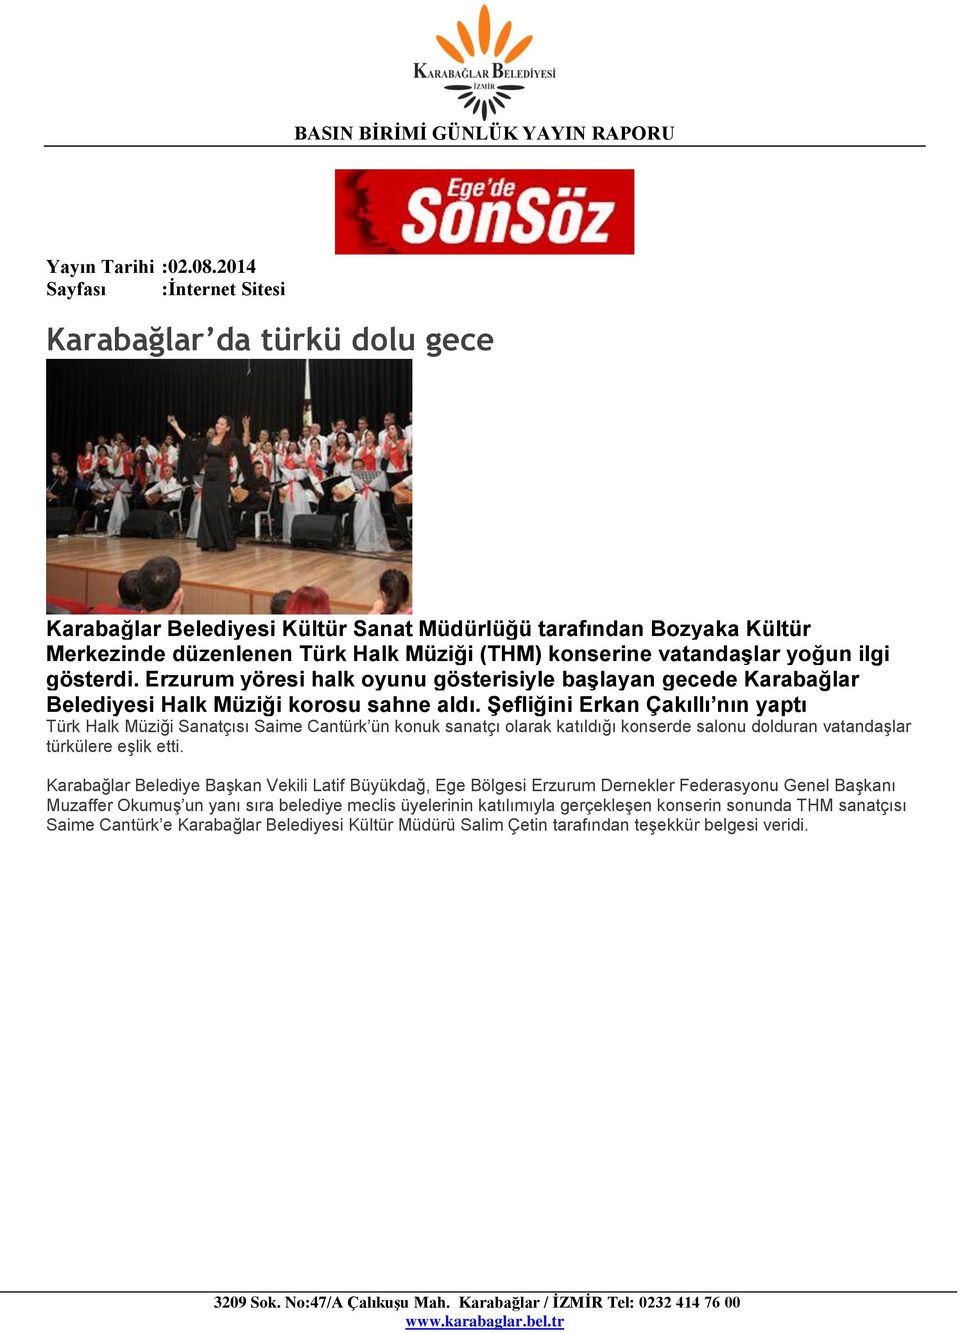 ġefliğini Erkan Çakıllı nın yaptı Türk Halk Müziği Sanatçısı Saime Cantürk ün konuk sanatçı olarak katıldığı konserde salonu dolduran vatandaşlar türkülere eşlik etti.